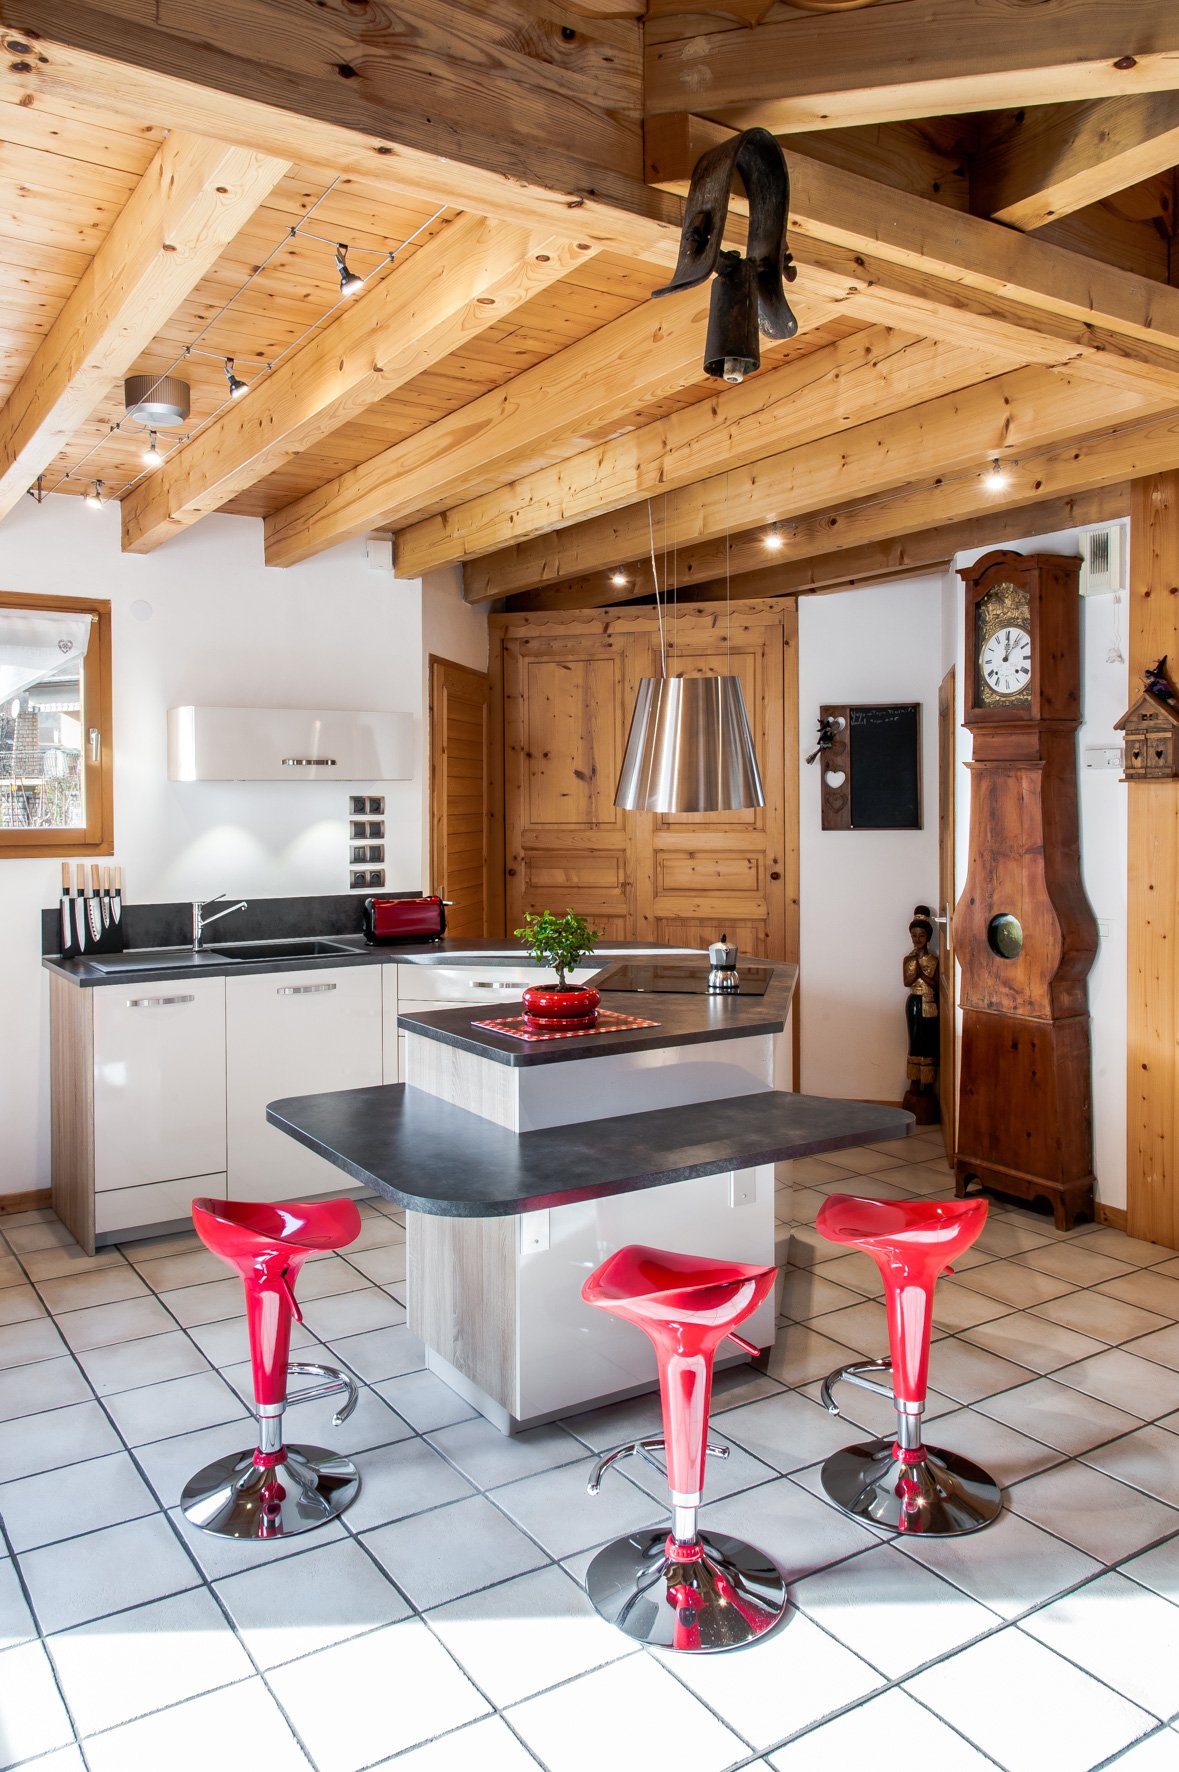 Cuisine ouverte de style contemporain et rustique à Gilly-sur-Isère | Raison Home - 1